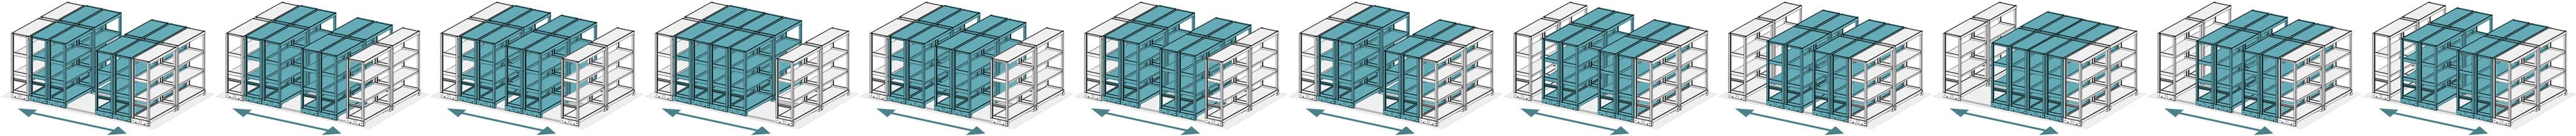 レール式移動棚の2連複式(並列前後4台同時)移動アニメーション